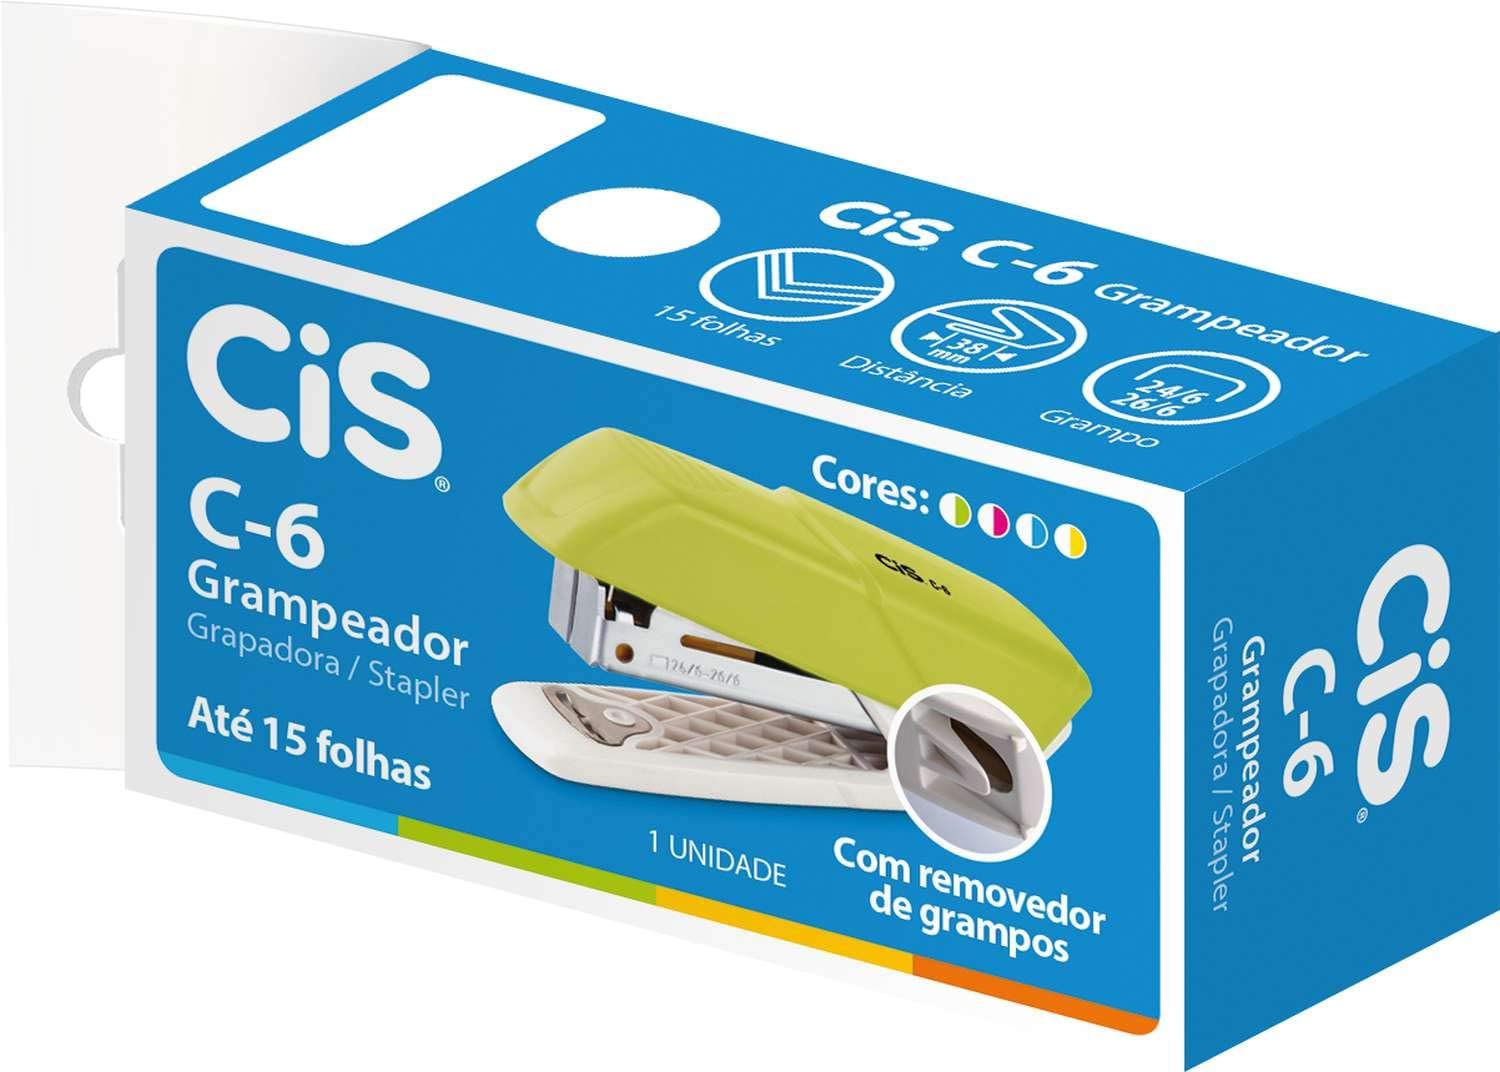 Mini Grampeador Cis C-6 Azul com removedor de grampos